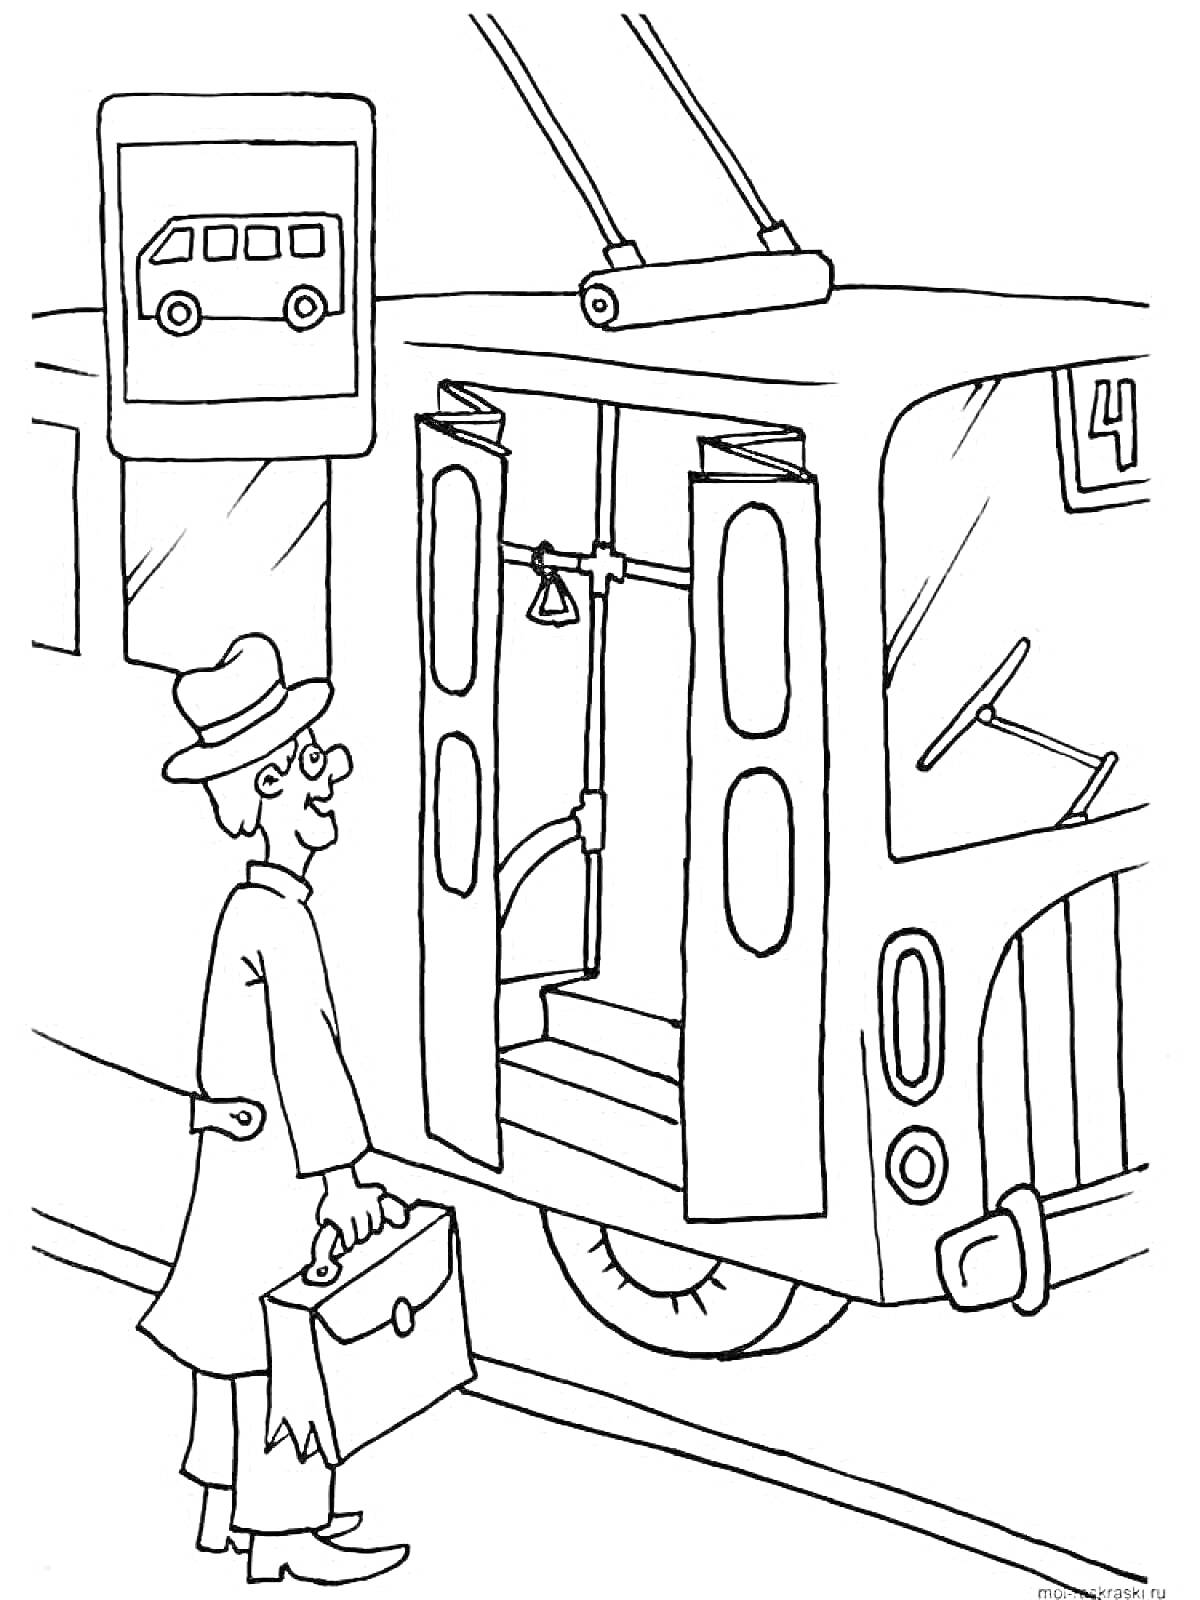 Раскраска Человек с портфелем у троллейбуса на остановке с дорожным знаком автобусной остановки.